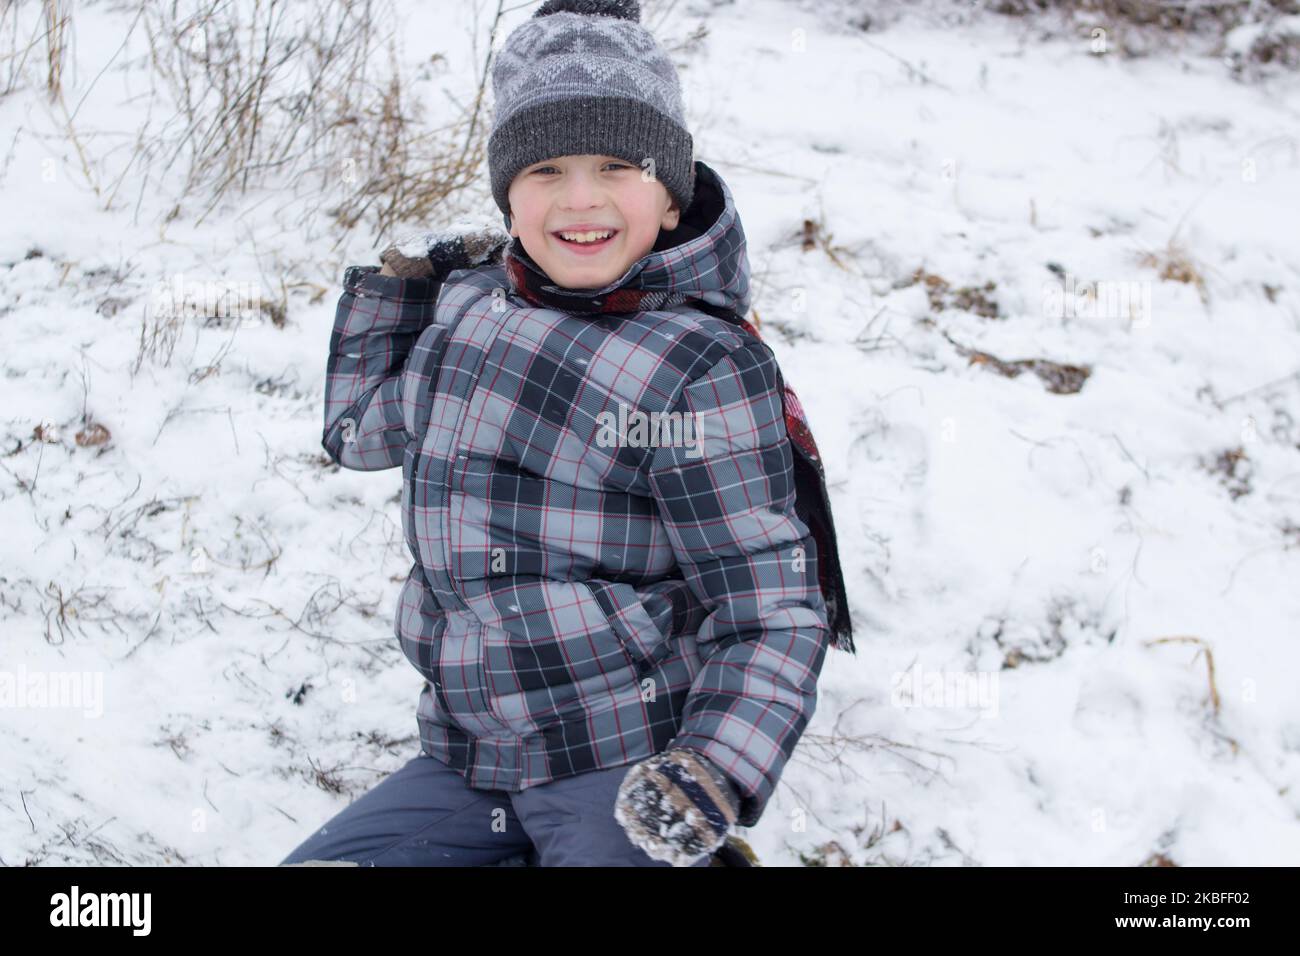 Der Junge lacht und wirft Schneebälle im Winter Stockfoto